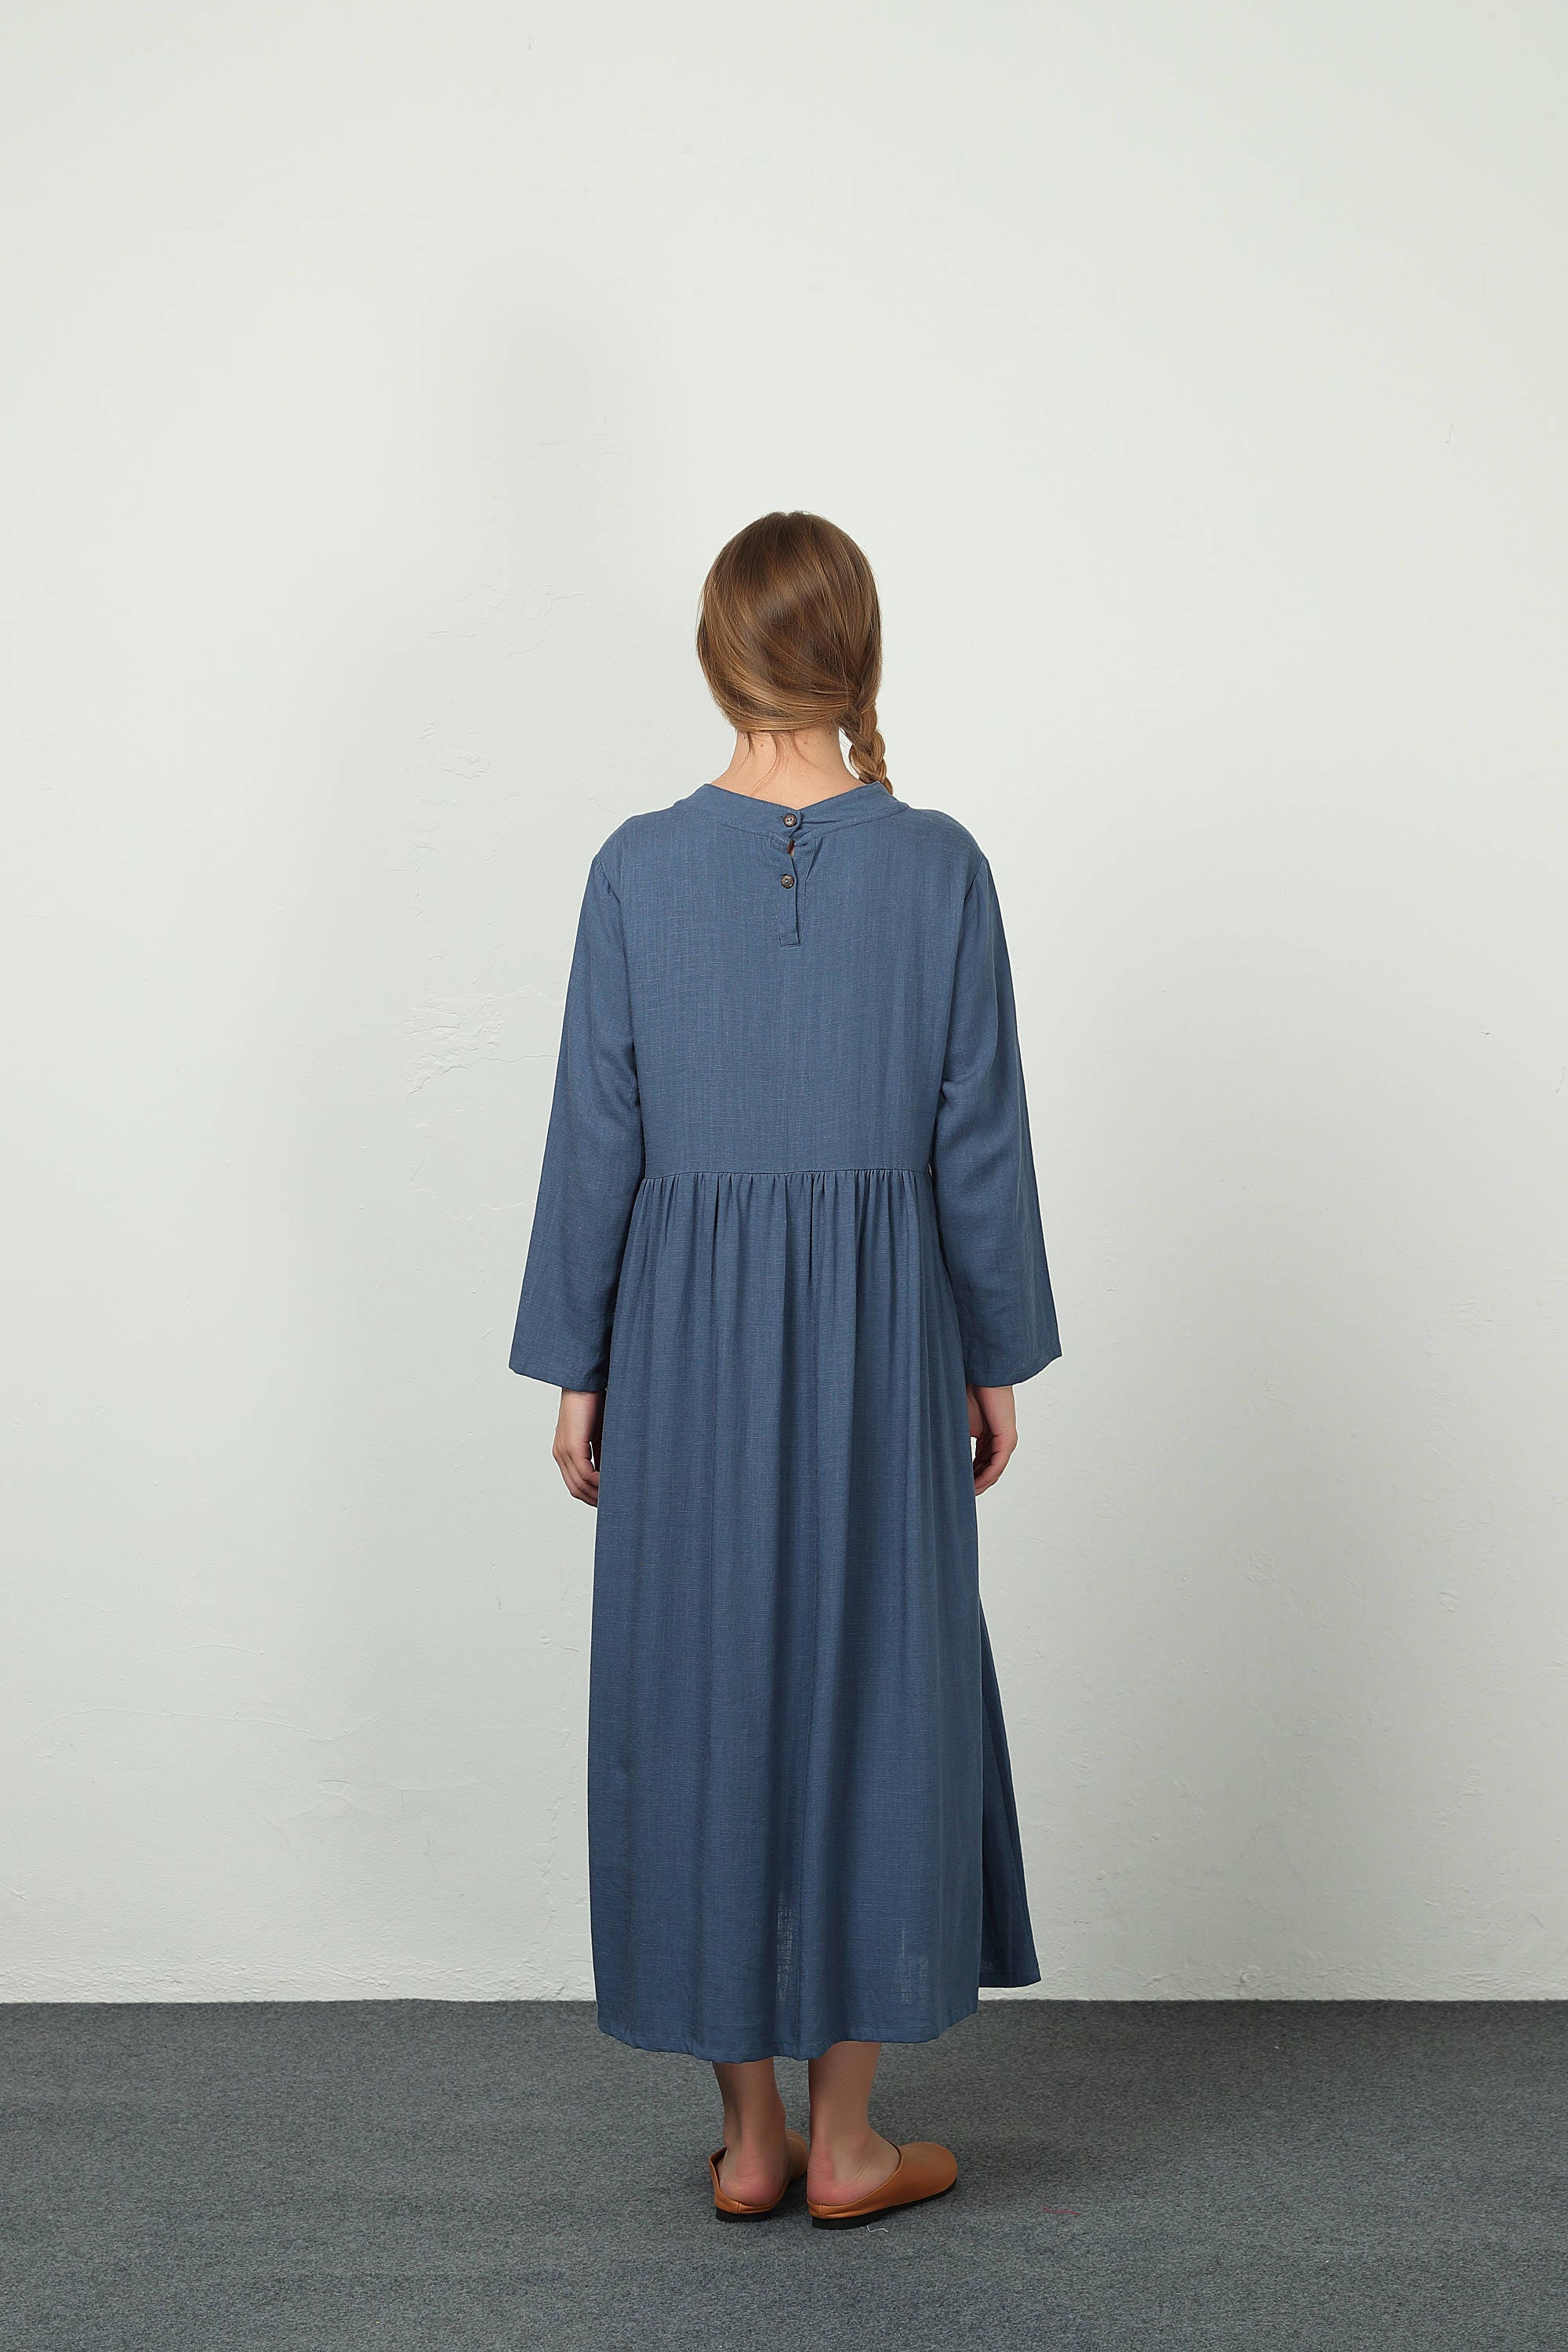 Women's Linen Dress Long Sleeve Maxi Dress Shirt Dress | Etsy